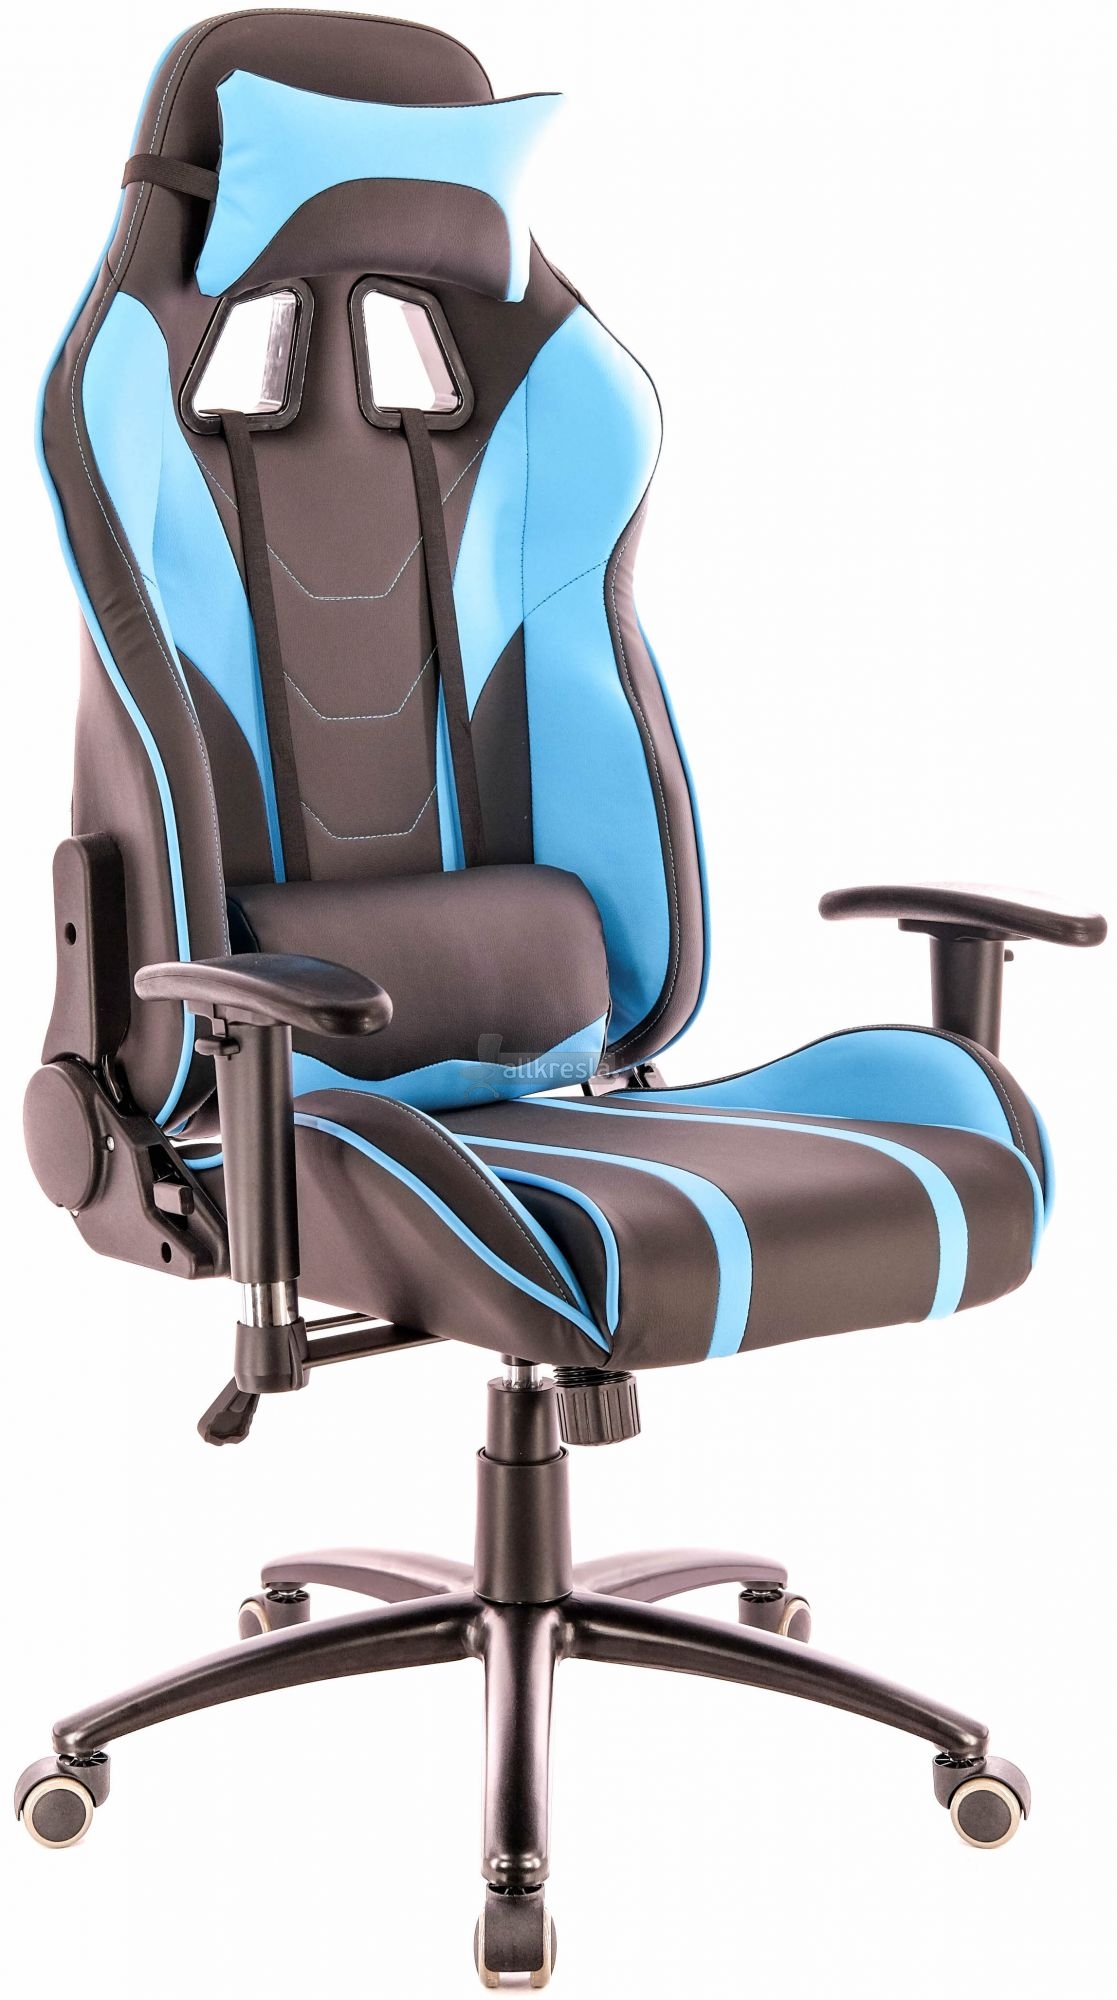 Купить геймерское кресло EvP Lotus S16 (Лотос)